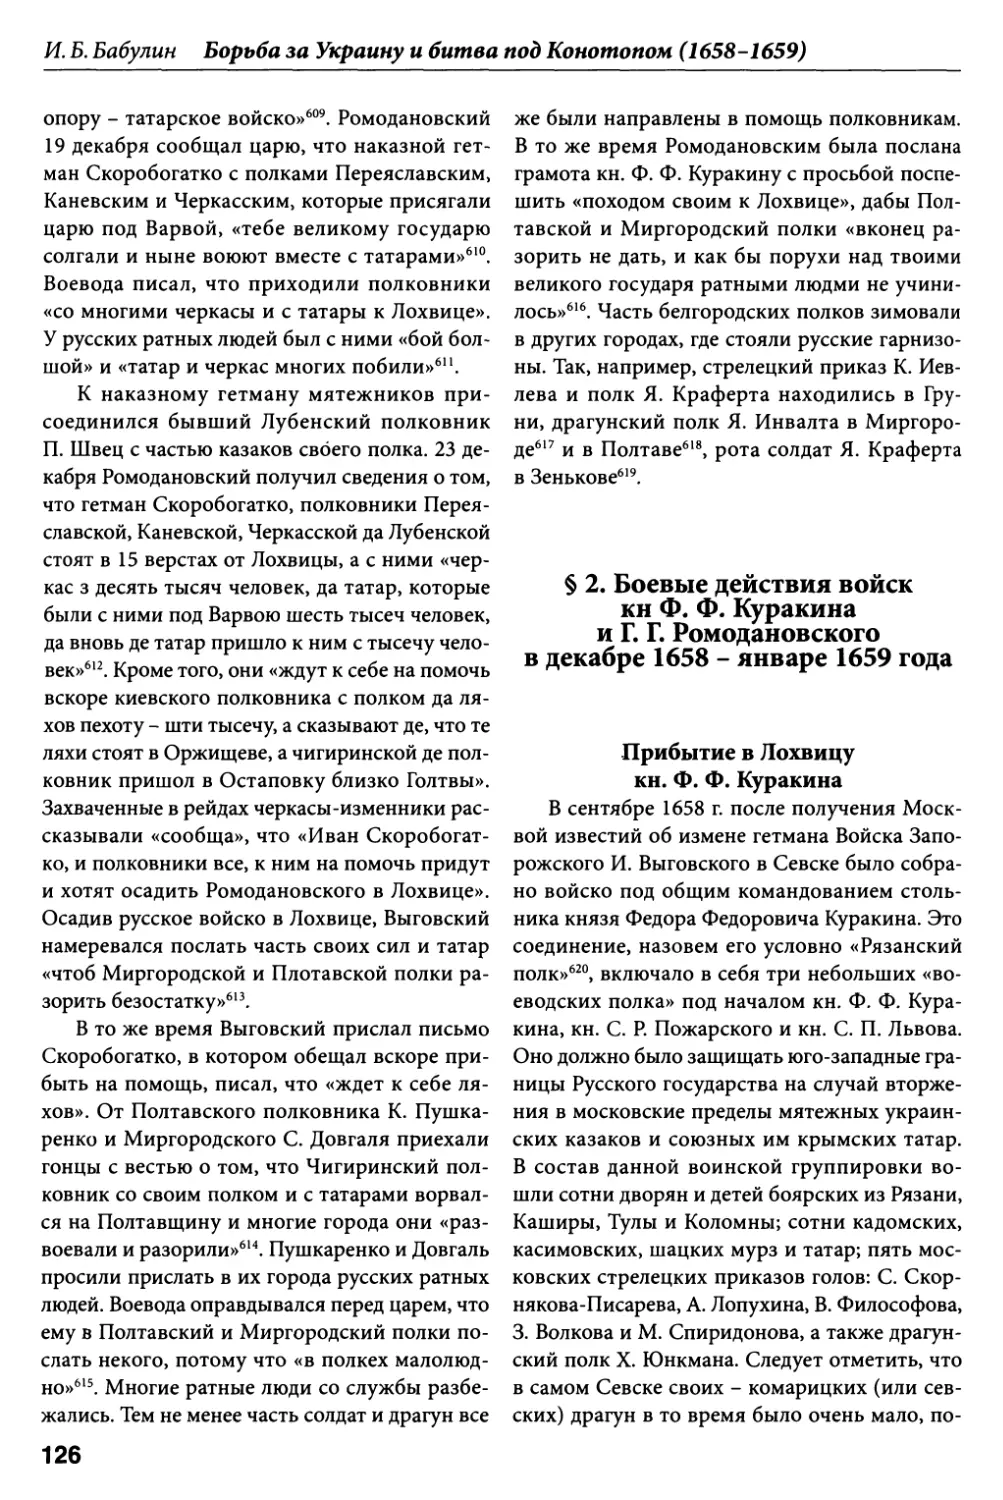 § 2. Боевые действия войск кн. Ф.Ф. Куракина и Г.Г. Ромодановского в декабре 1658 – январе 1659 года